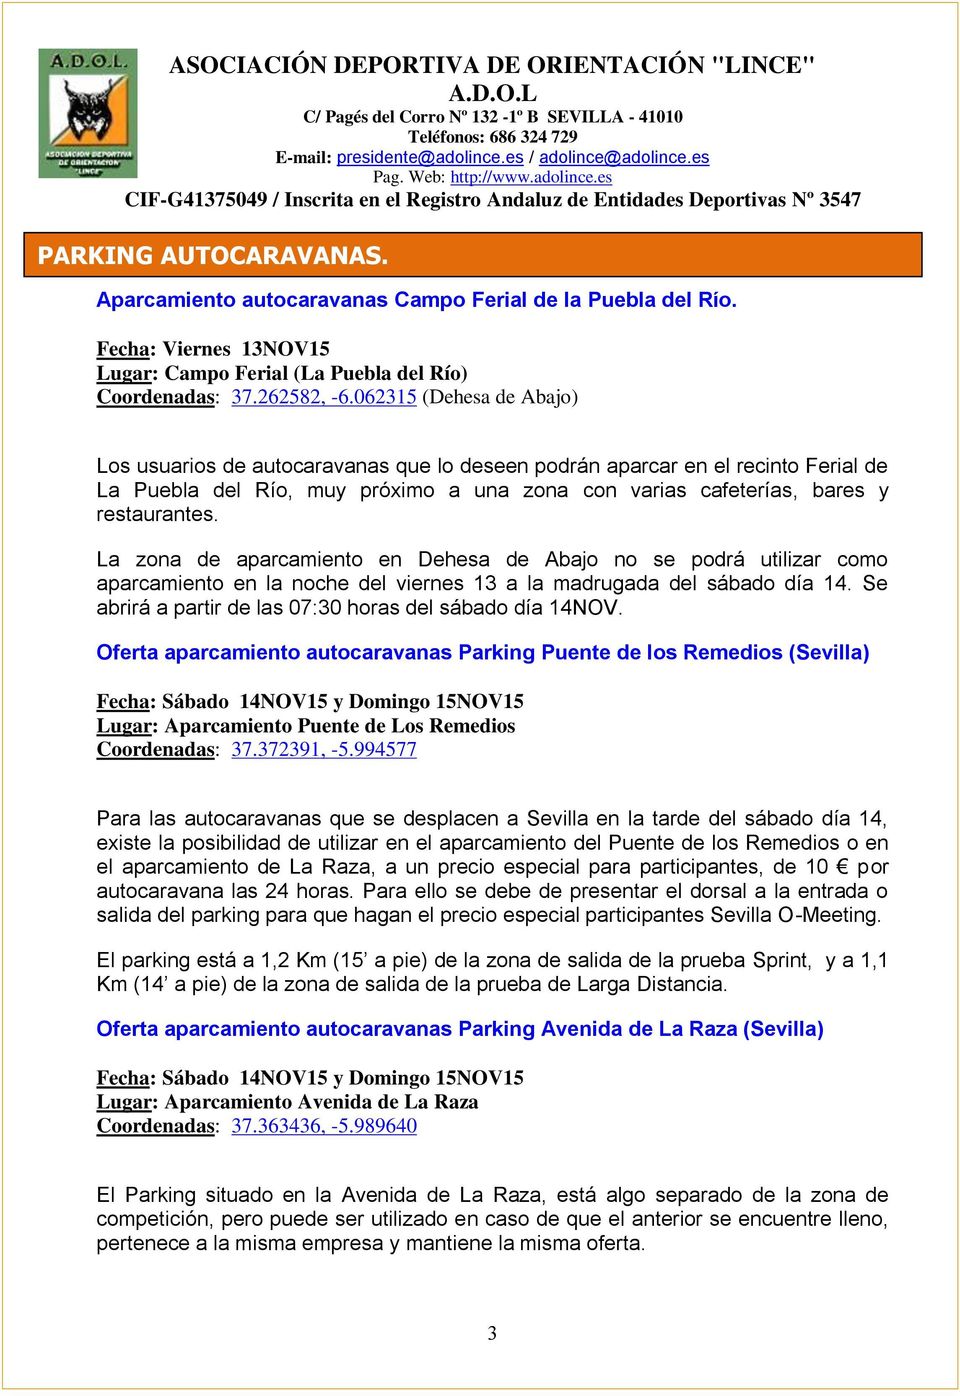 La zona de aparcamiento en Dehesa de Abajo no se podrá utilizar como aparcamiento en la noche del viernes 13 a la madrugada del sábado día 14.